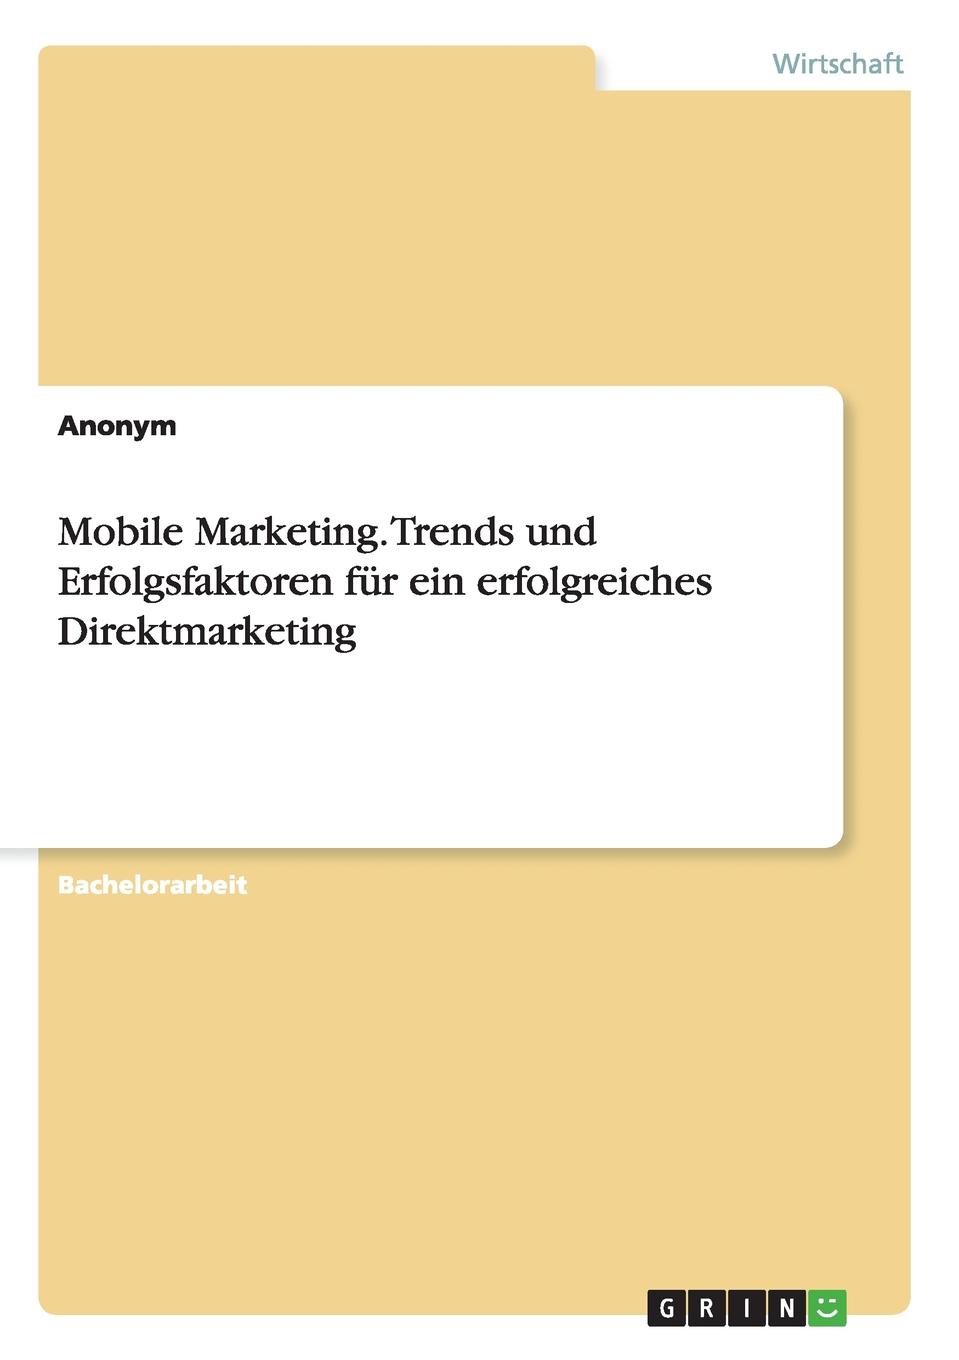 фото Mobile Marketing. Trends und Erfolgsfaktoren fur ein erfolgreiches Direktmarketing